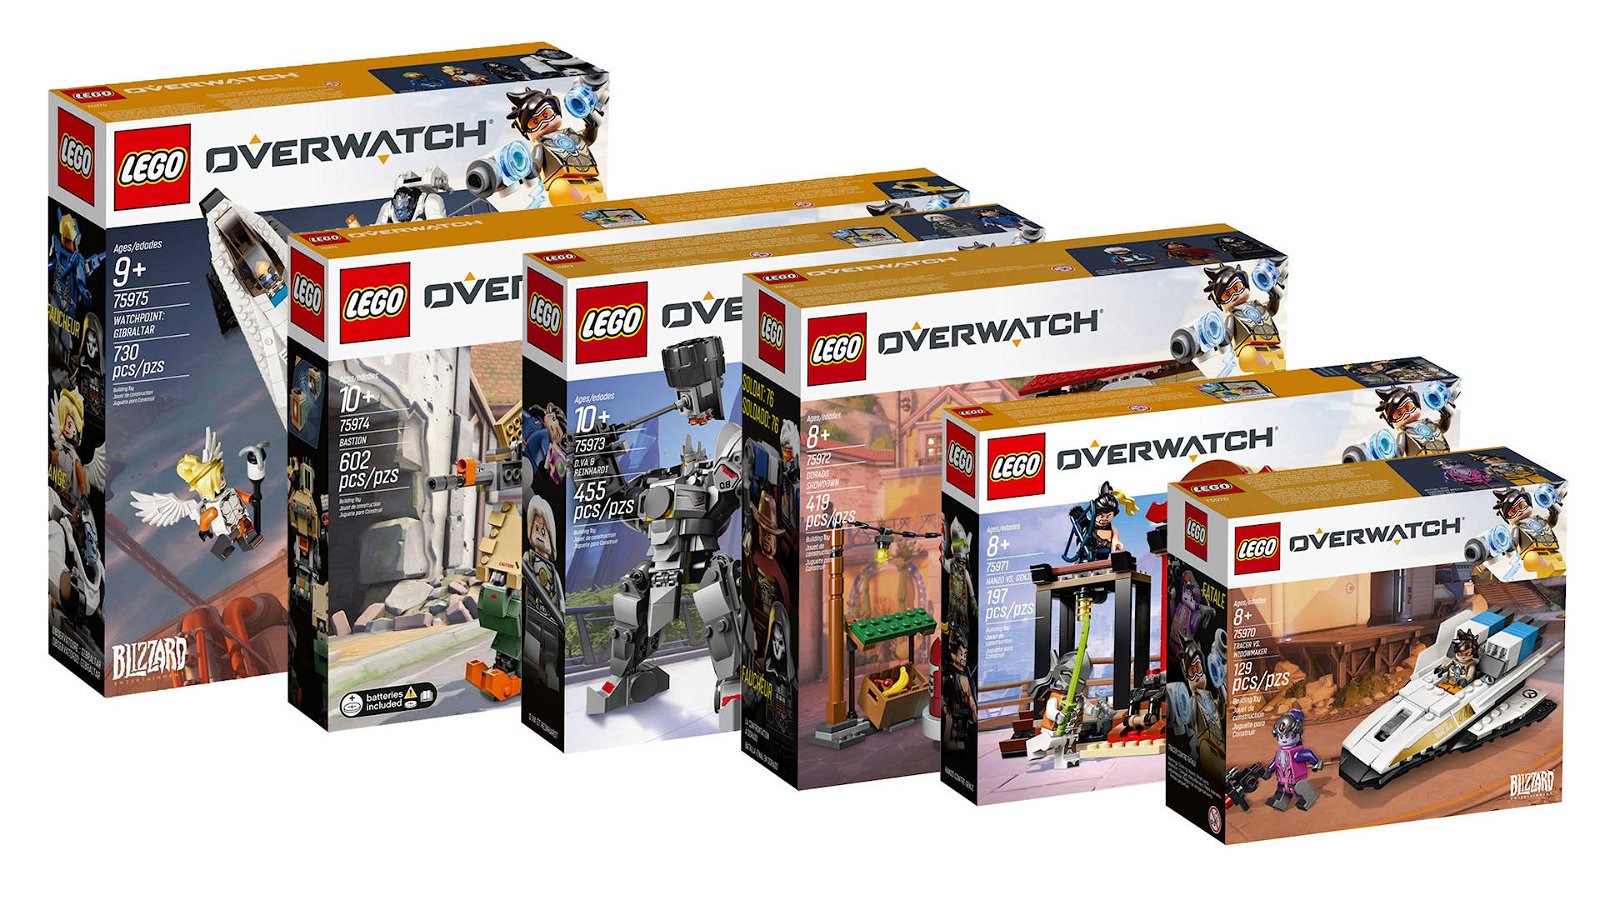 Immagine di LEGO Overwatch: la recensione della prima wave dei set del tema Overwatch